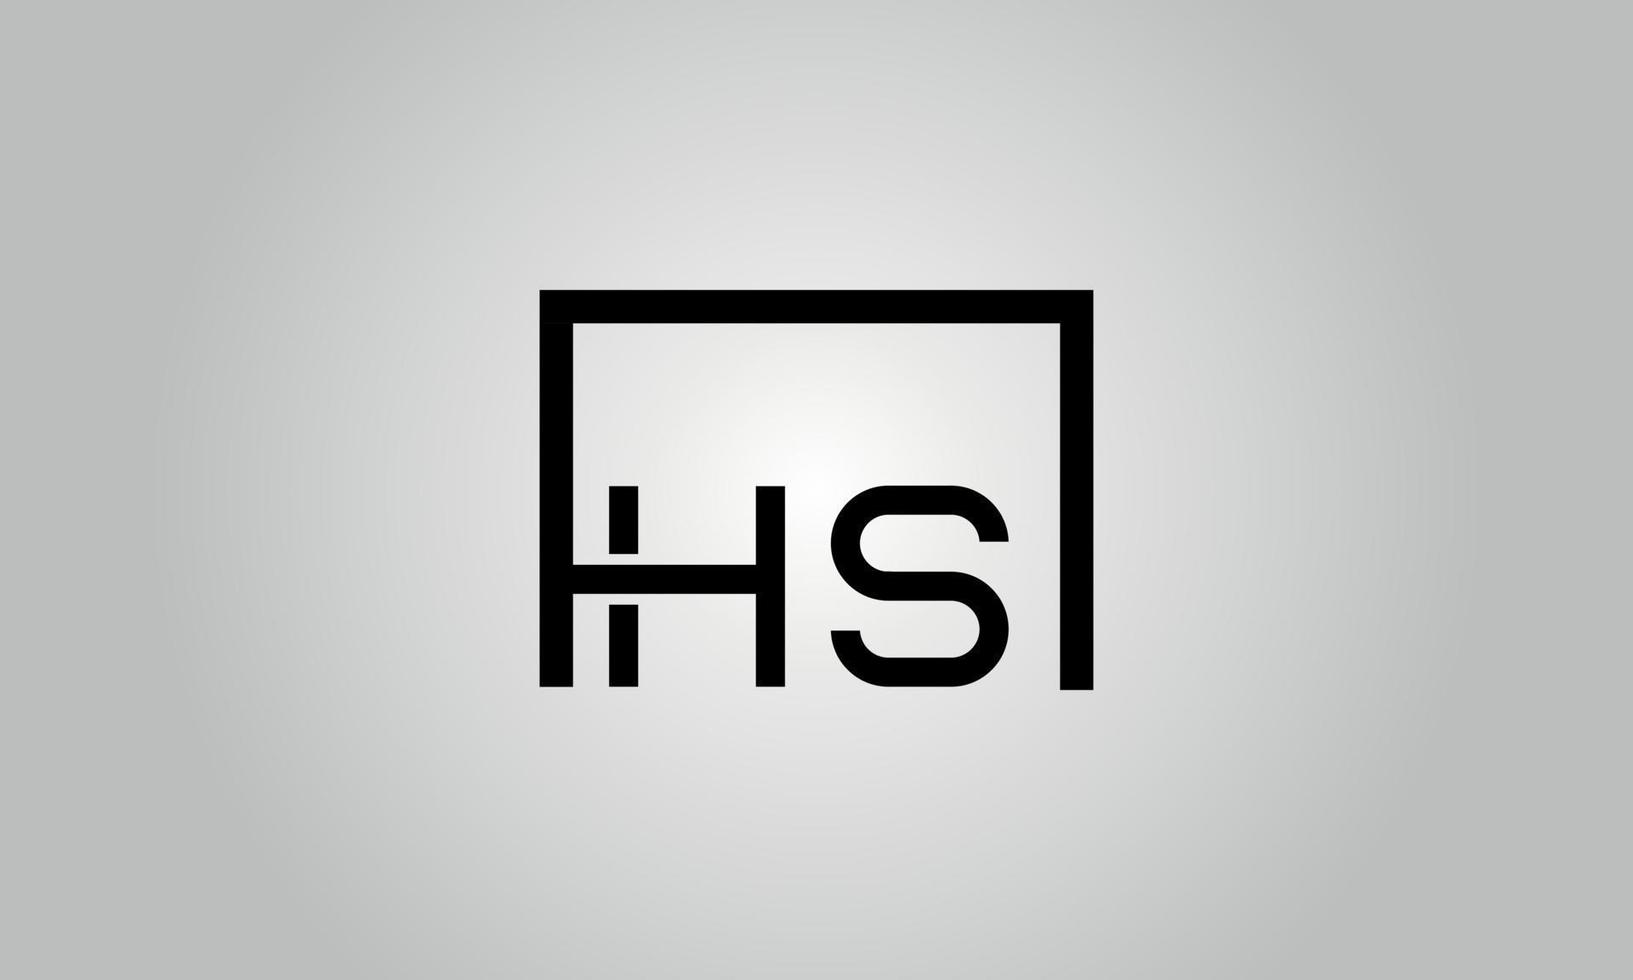 letra hs design de logotipo. hs logotipo com forma quadrada em cores pretas modelo de vetor livre.